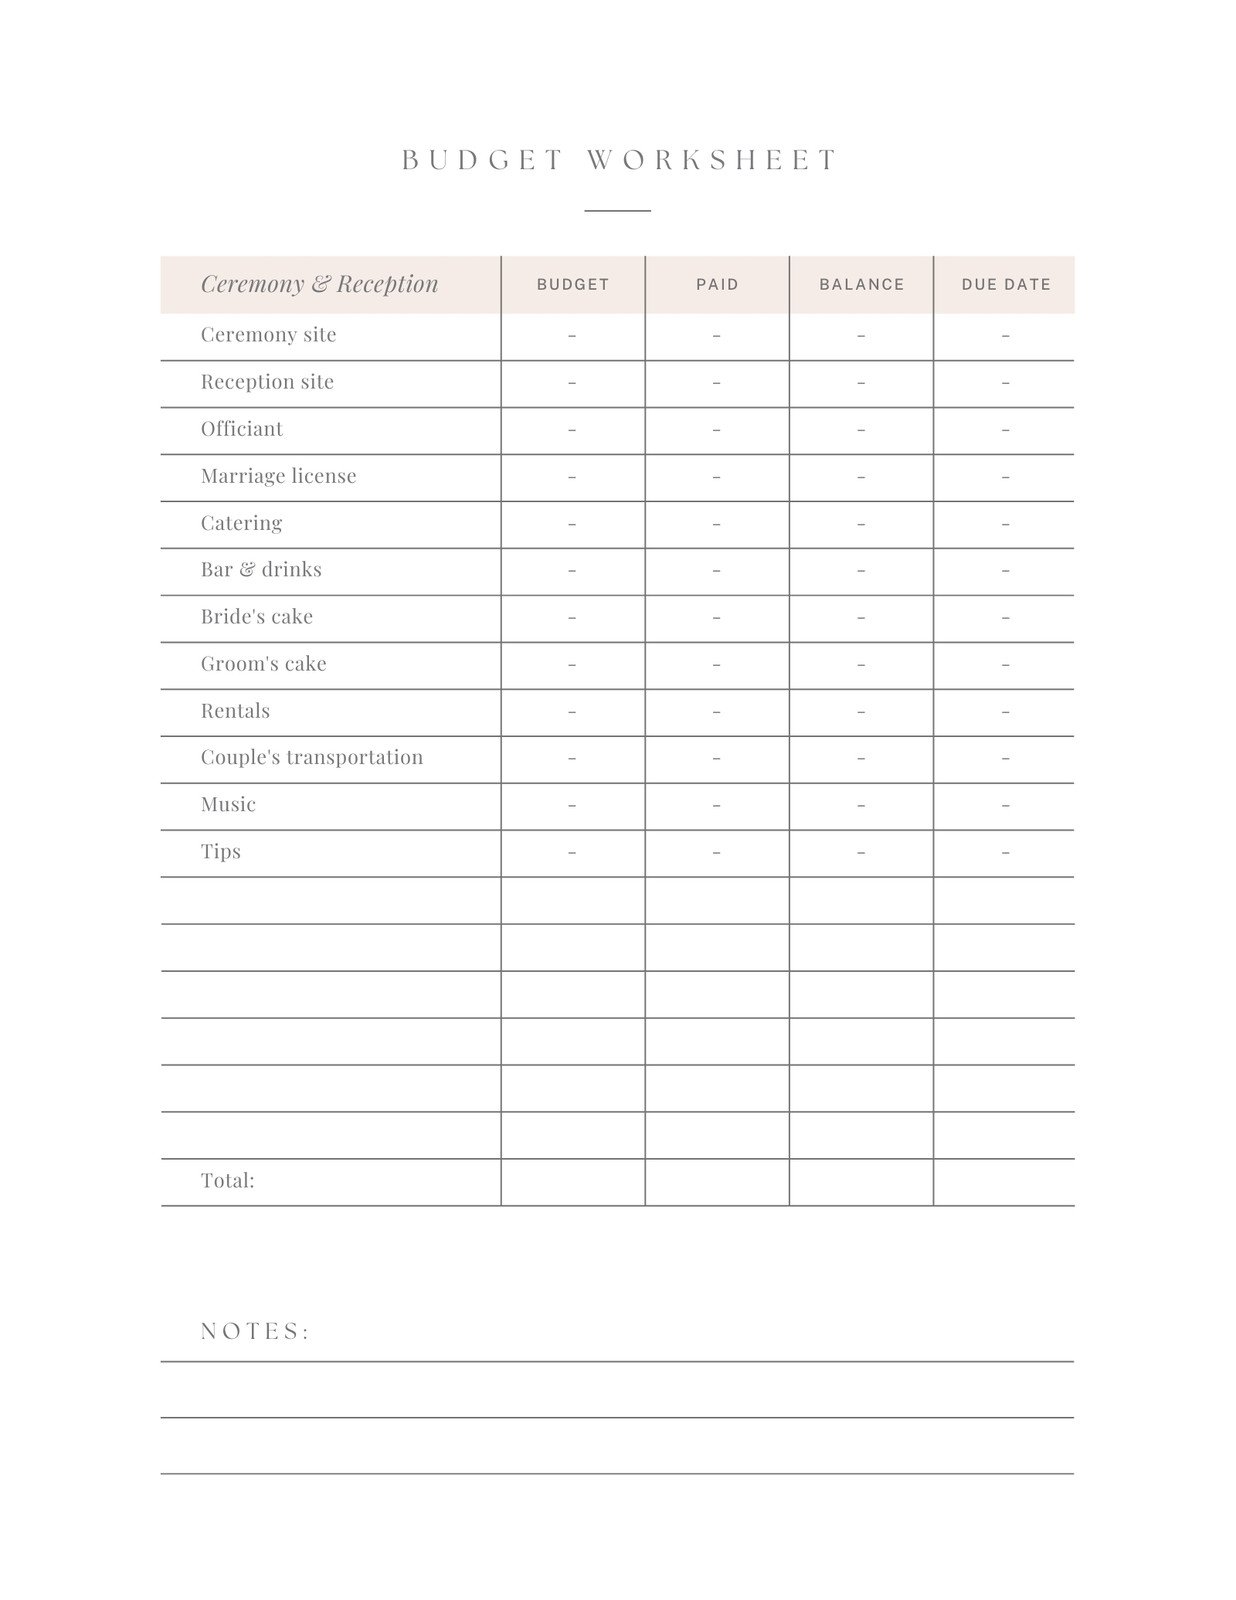 Wedding Planner Checklist Wedding Worksheets Printable -   Wedding  planner printables, Wedding planner binder, Wedding planning book